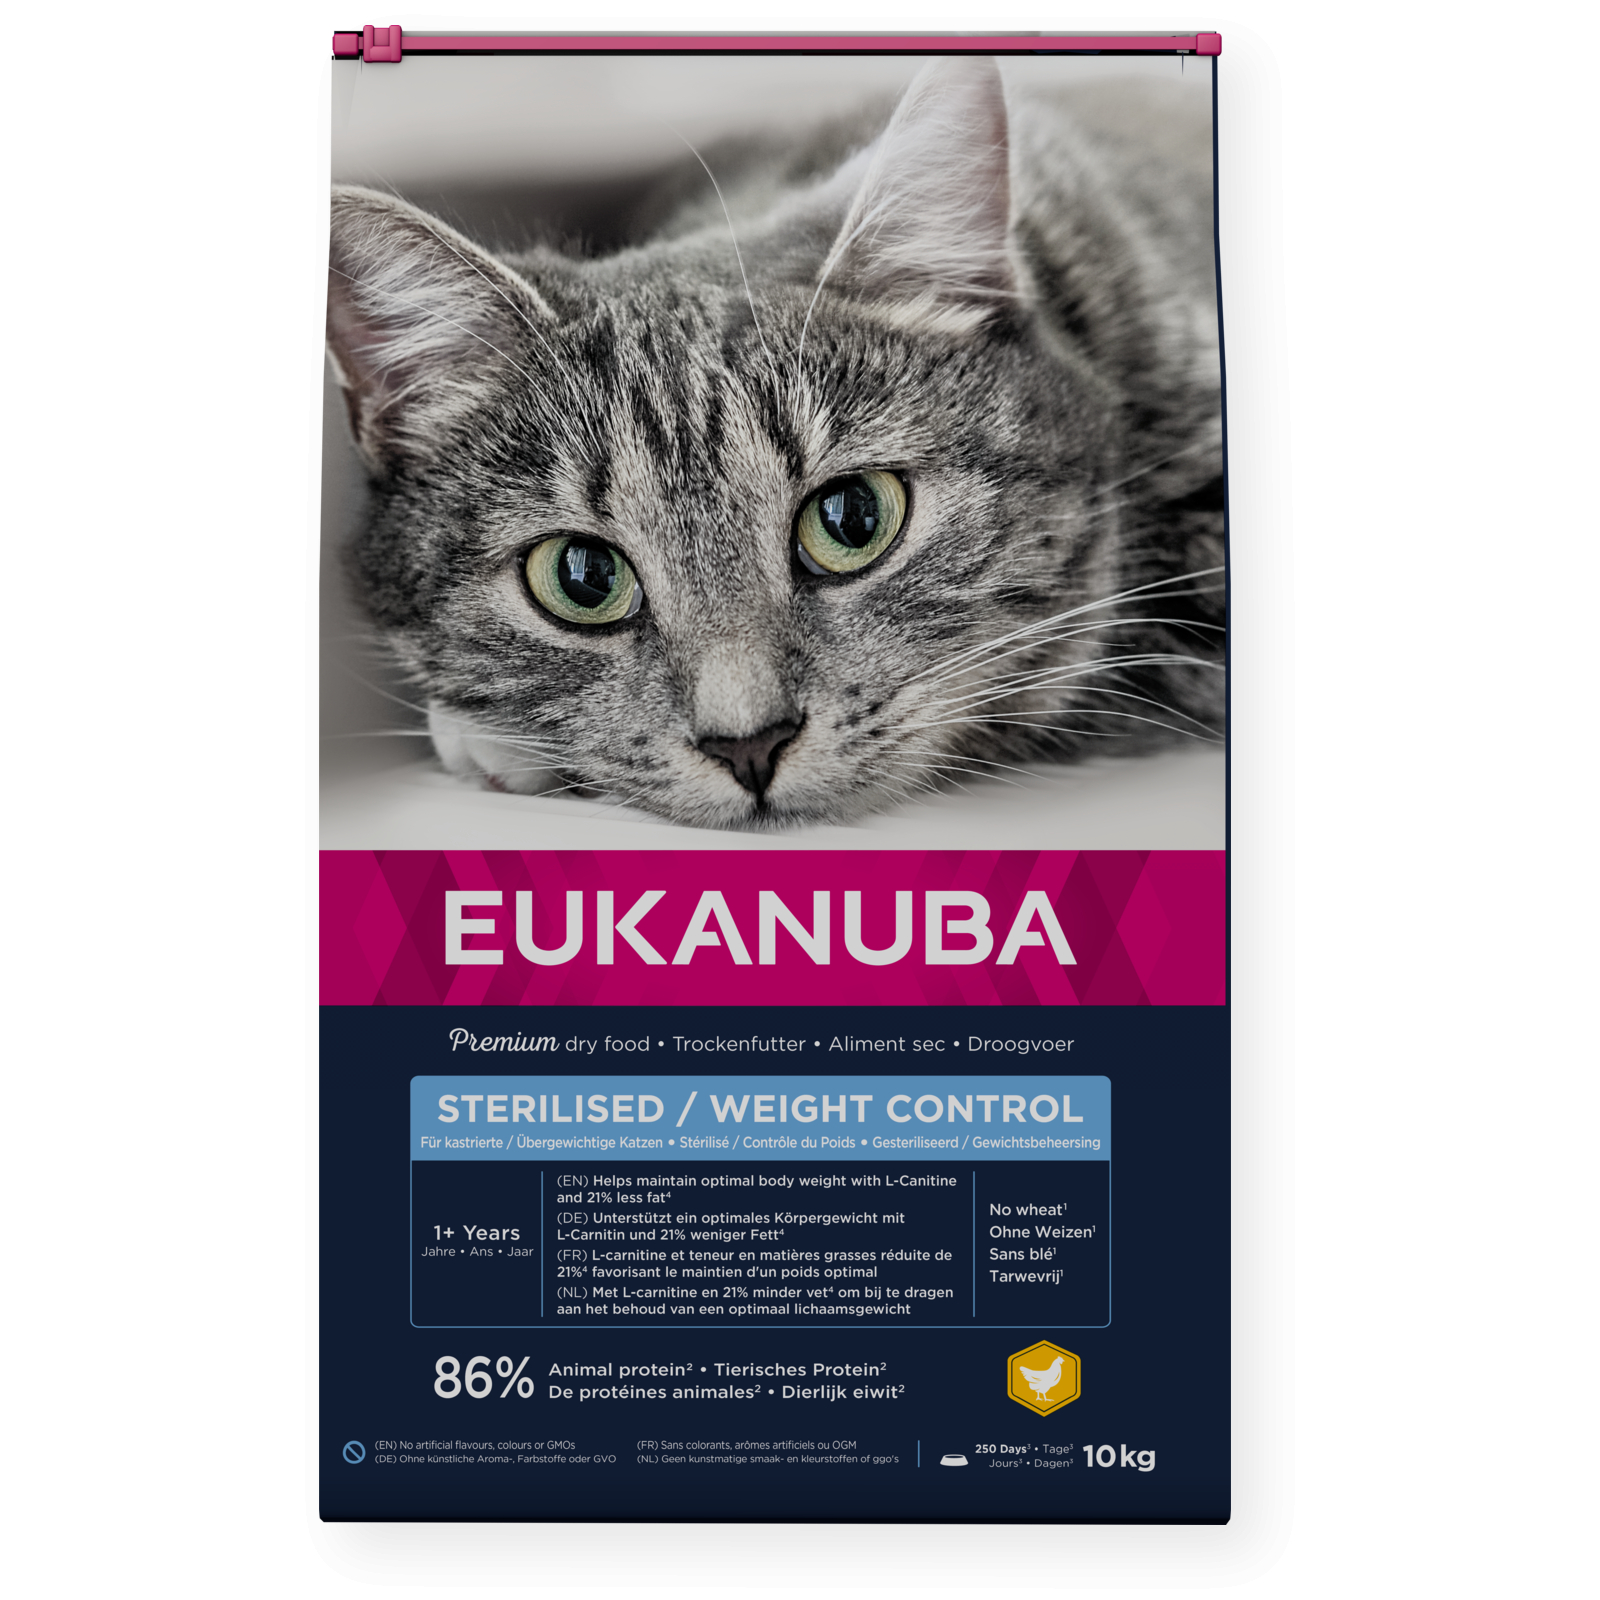 Eukanuba Weight Control / Sterilised para gatos adultos esterilizados ou com excesso de peso